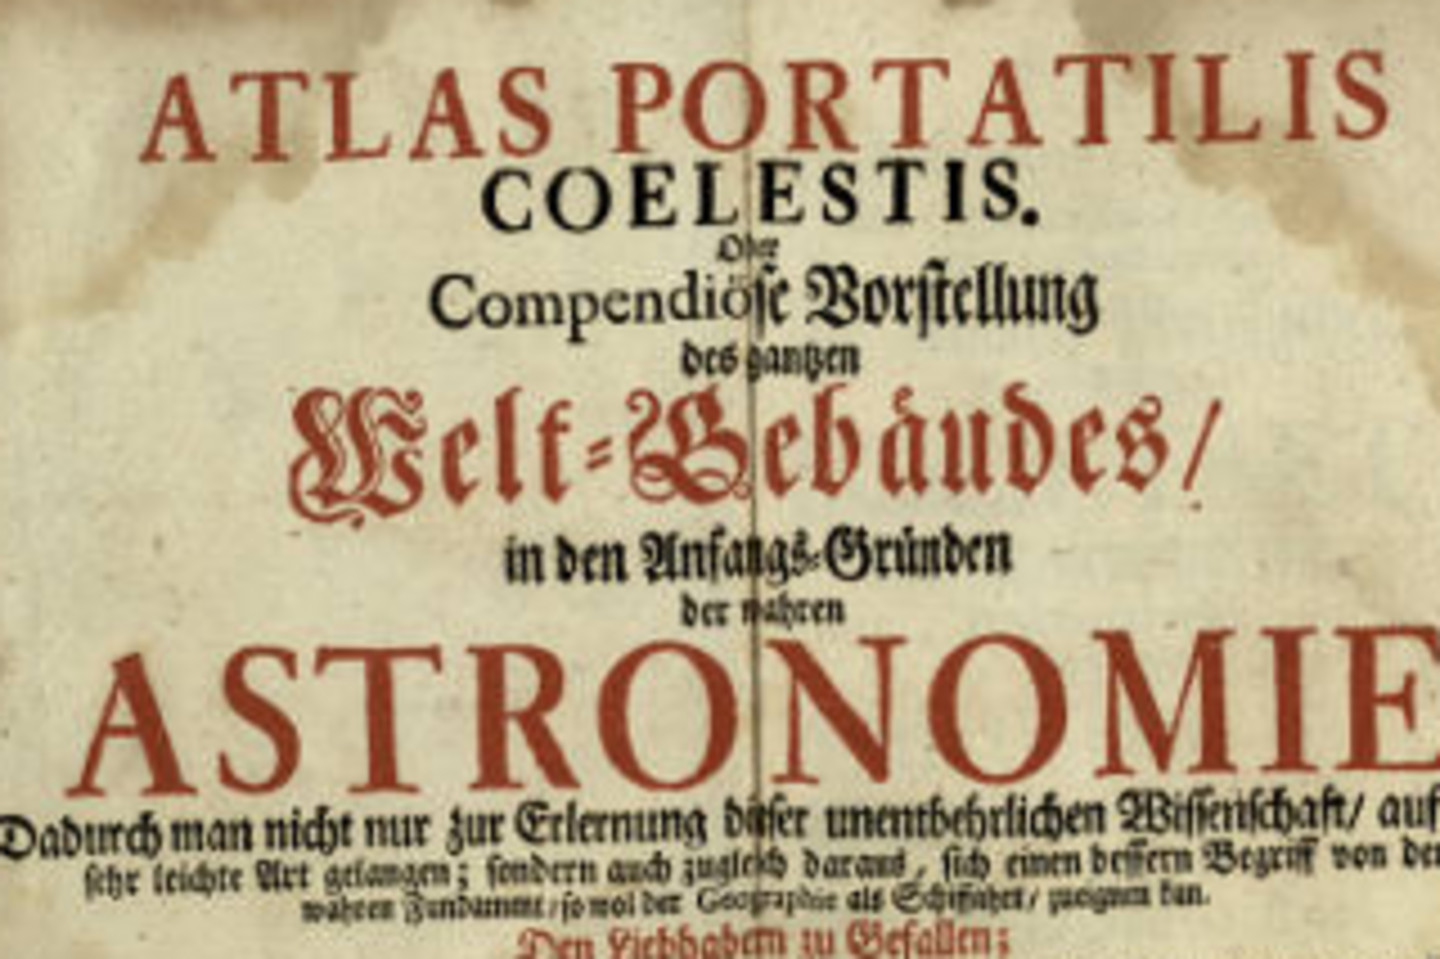 Kompendium zur Astronomie (Mathesis, Astronomia)